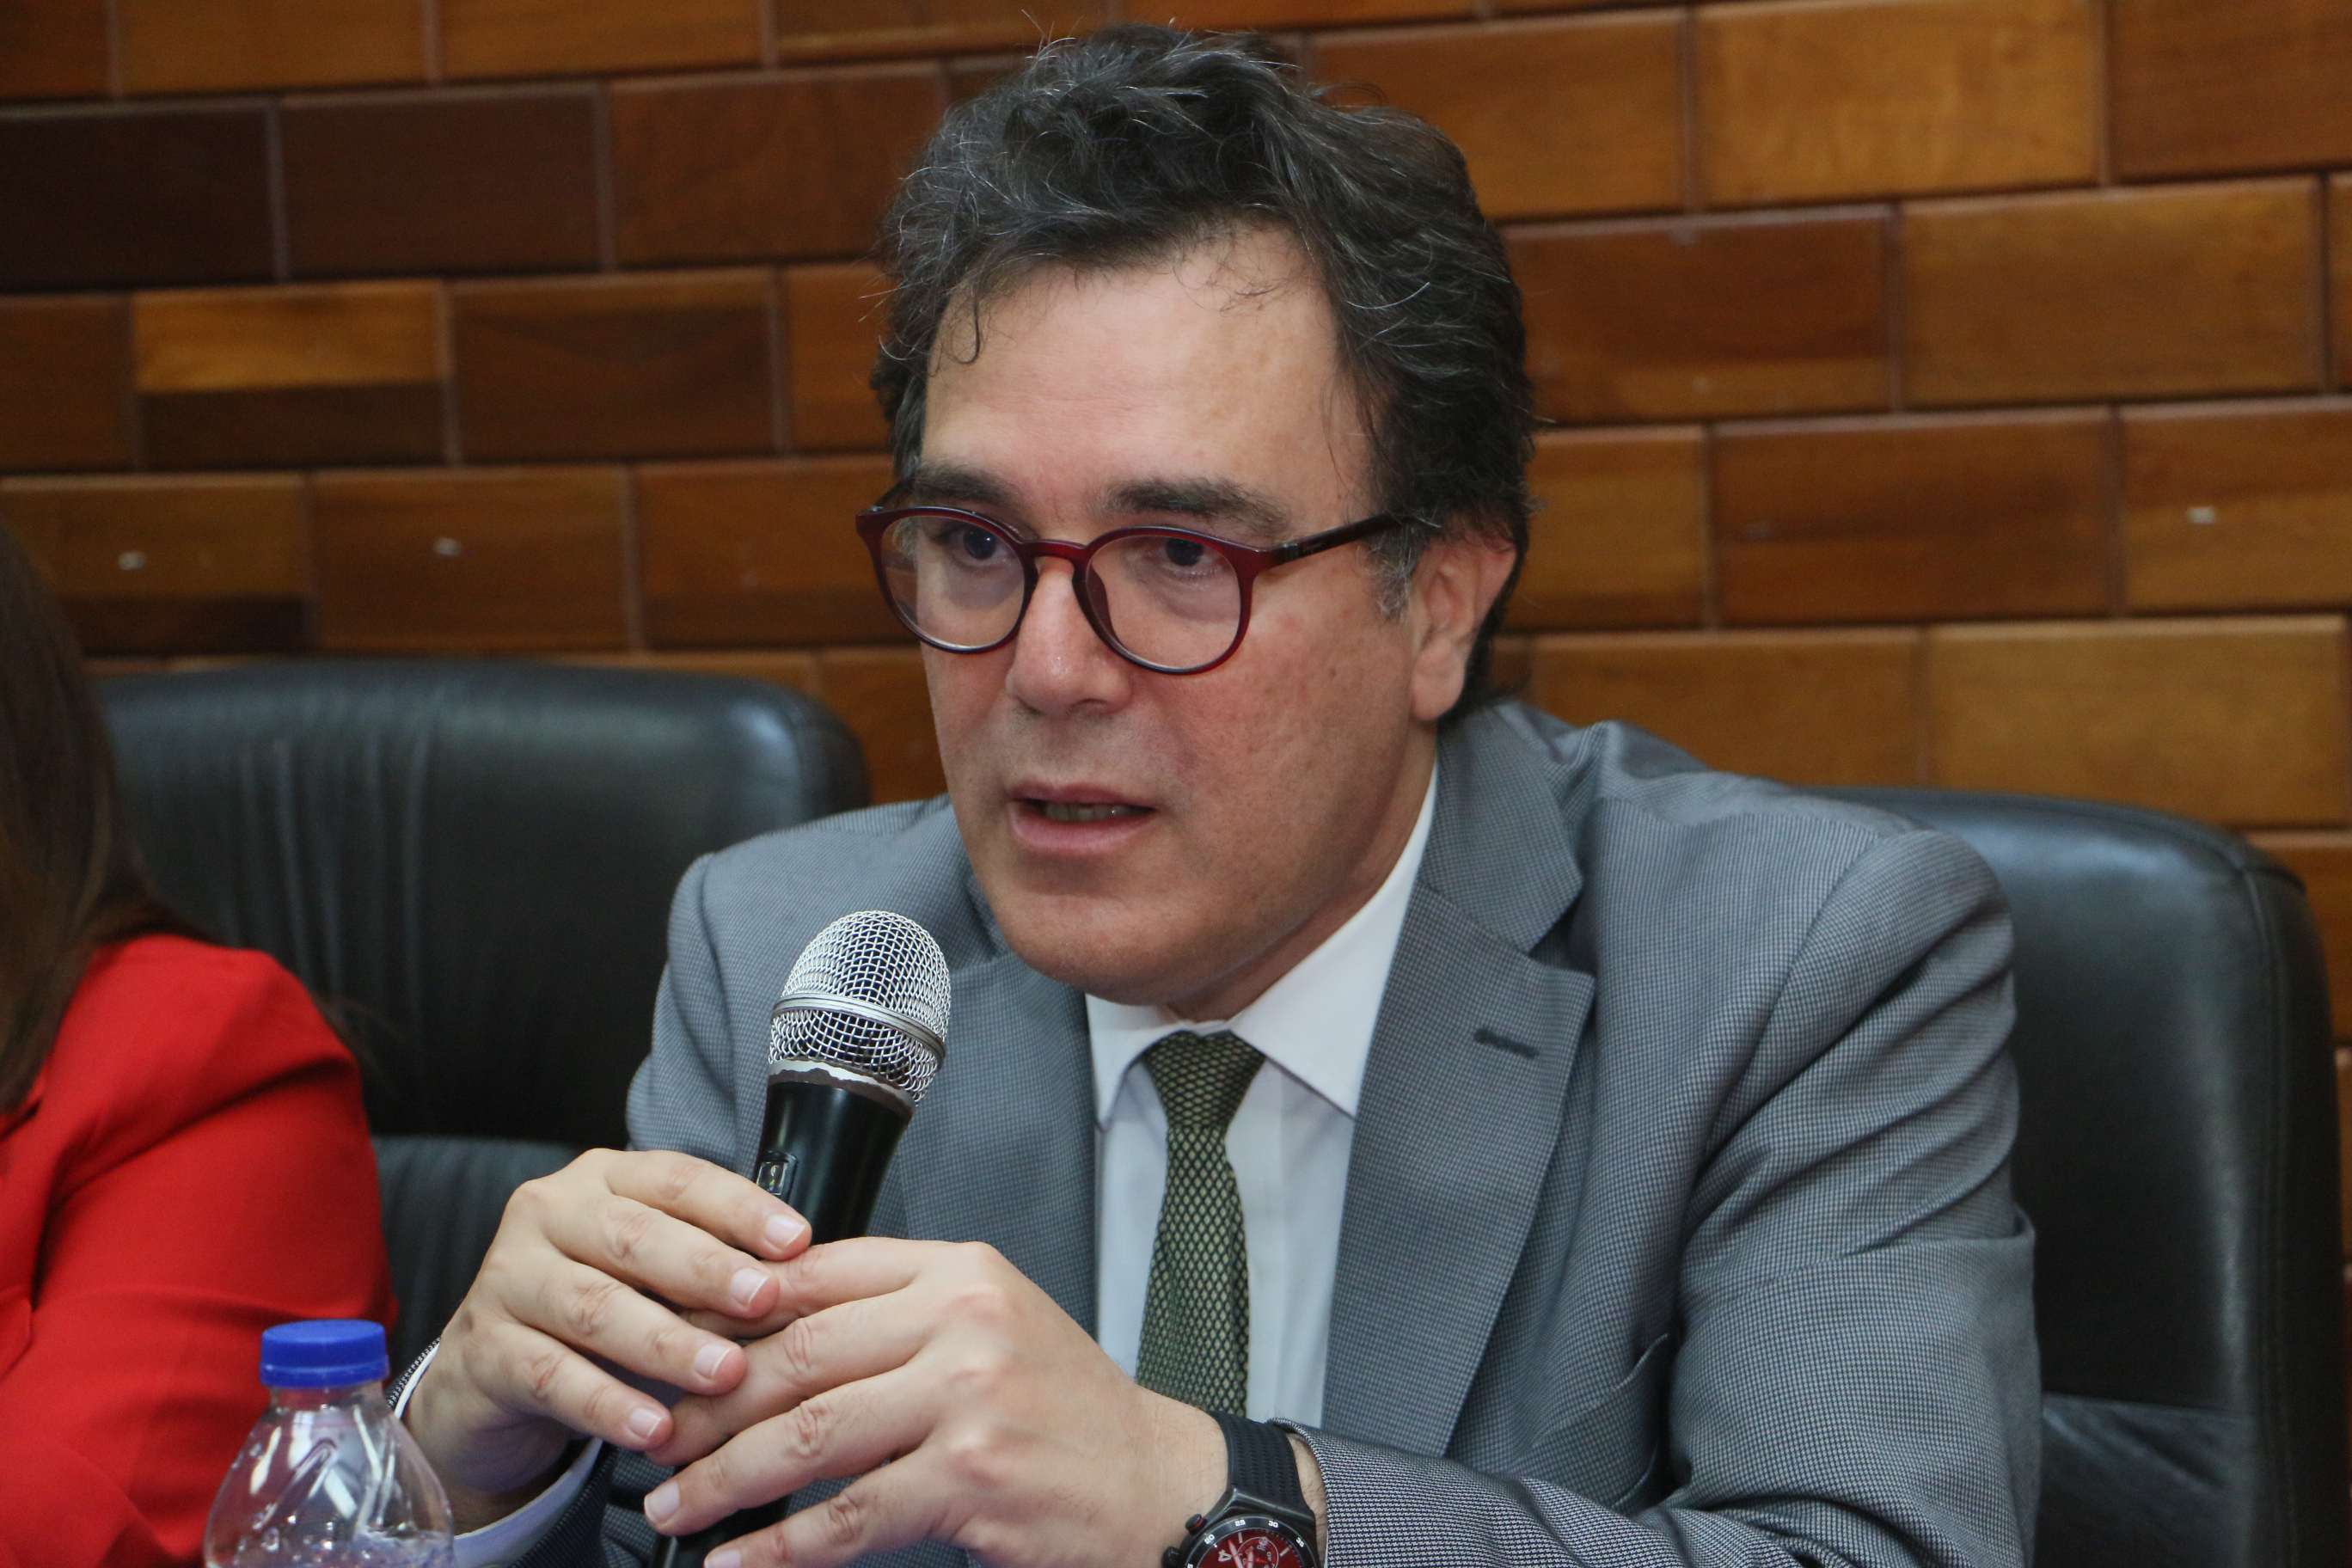 Magistrado Jottin Cury presenta libro “Límites al Derecho de Propiedad y Áreas Protegidas”, en Santiago Rodríguez